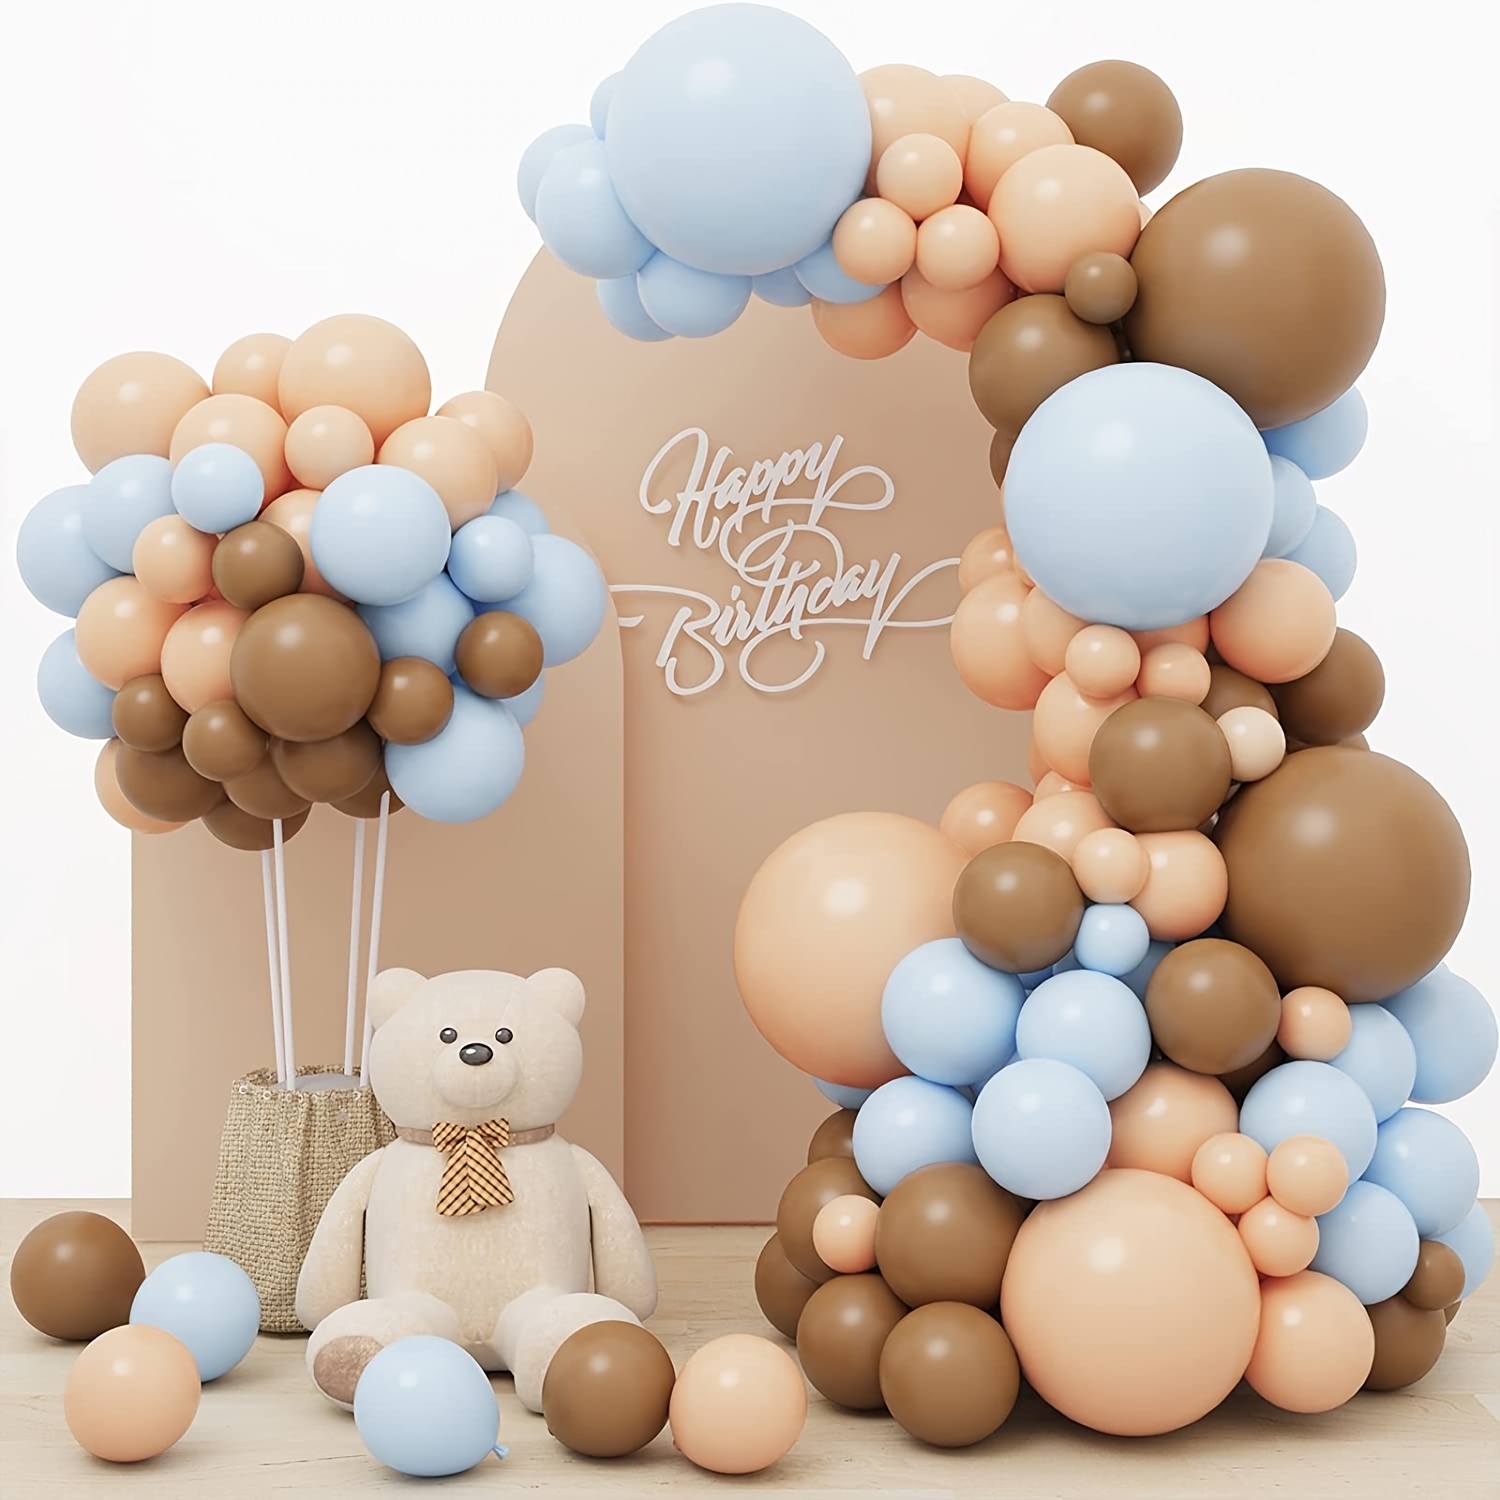 Pin de Dari en Arreglos  Decoraciones de globos para fiesta, Tarjetas a  mano de cumpleaños, Cestas de regalo para mujeres